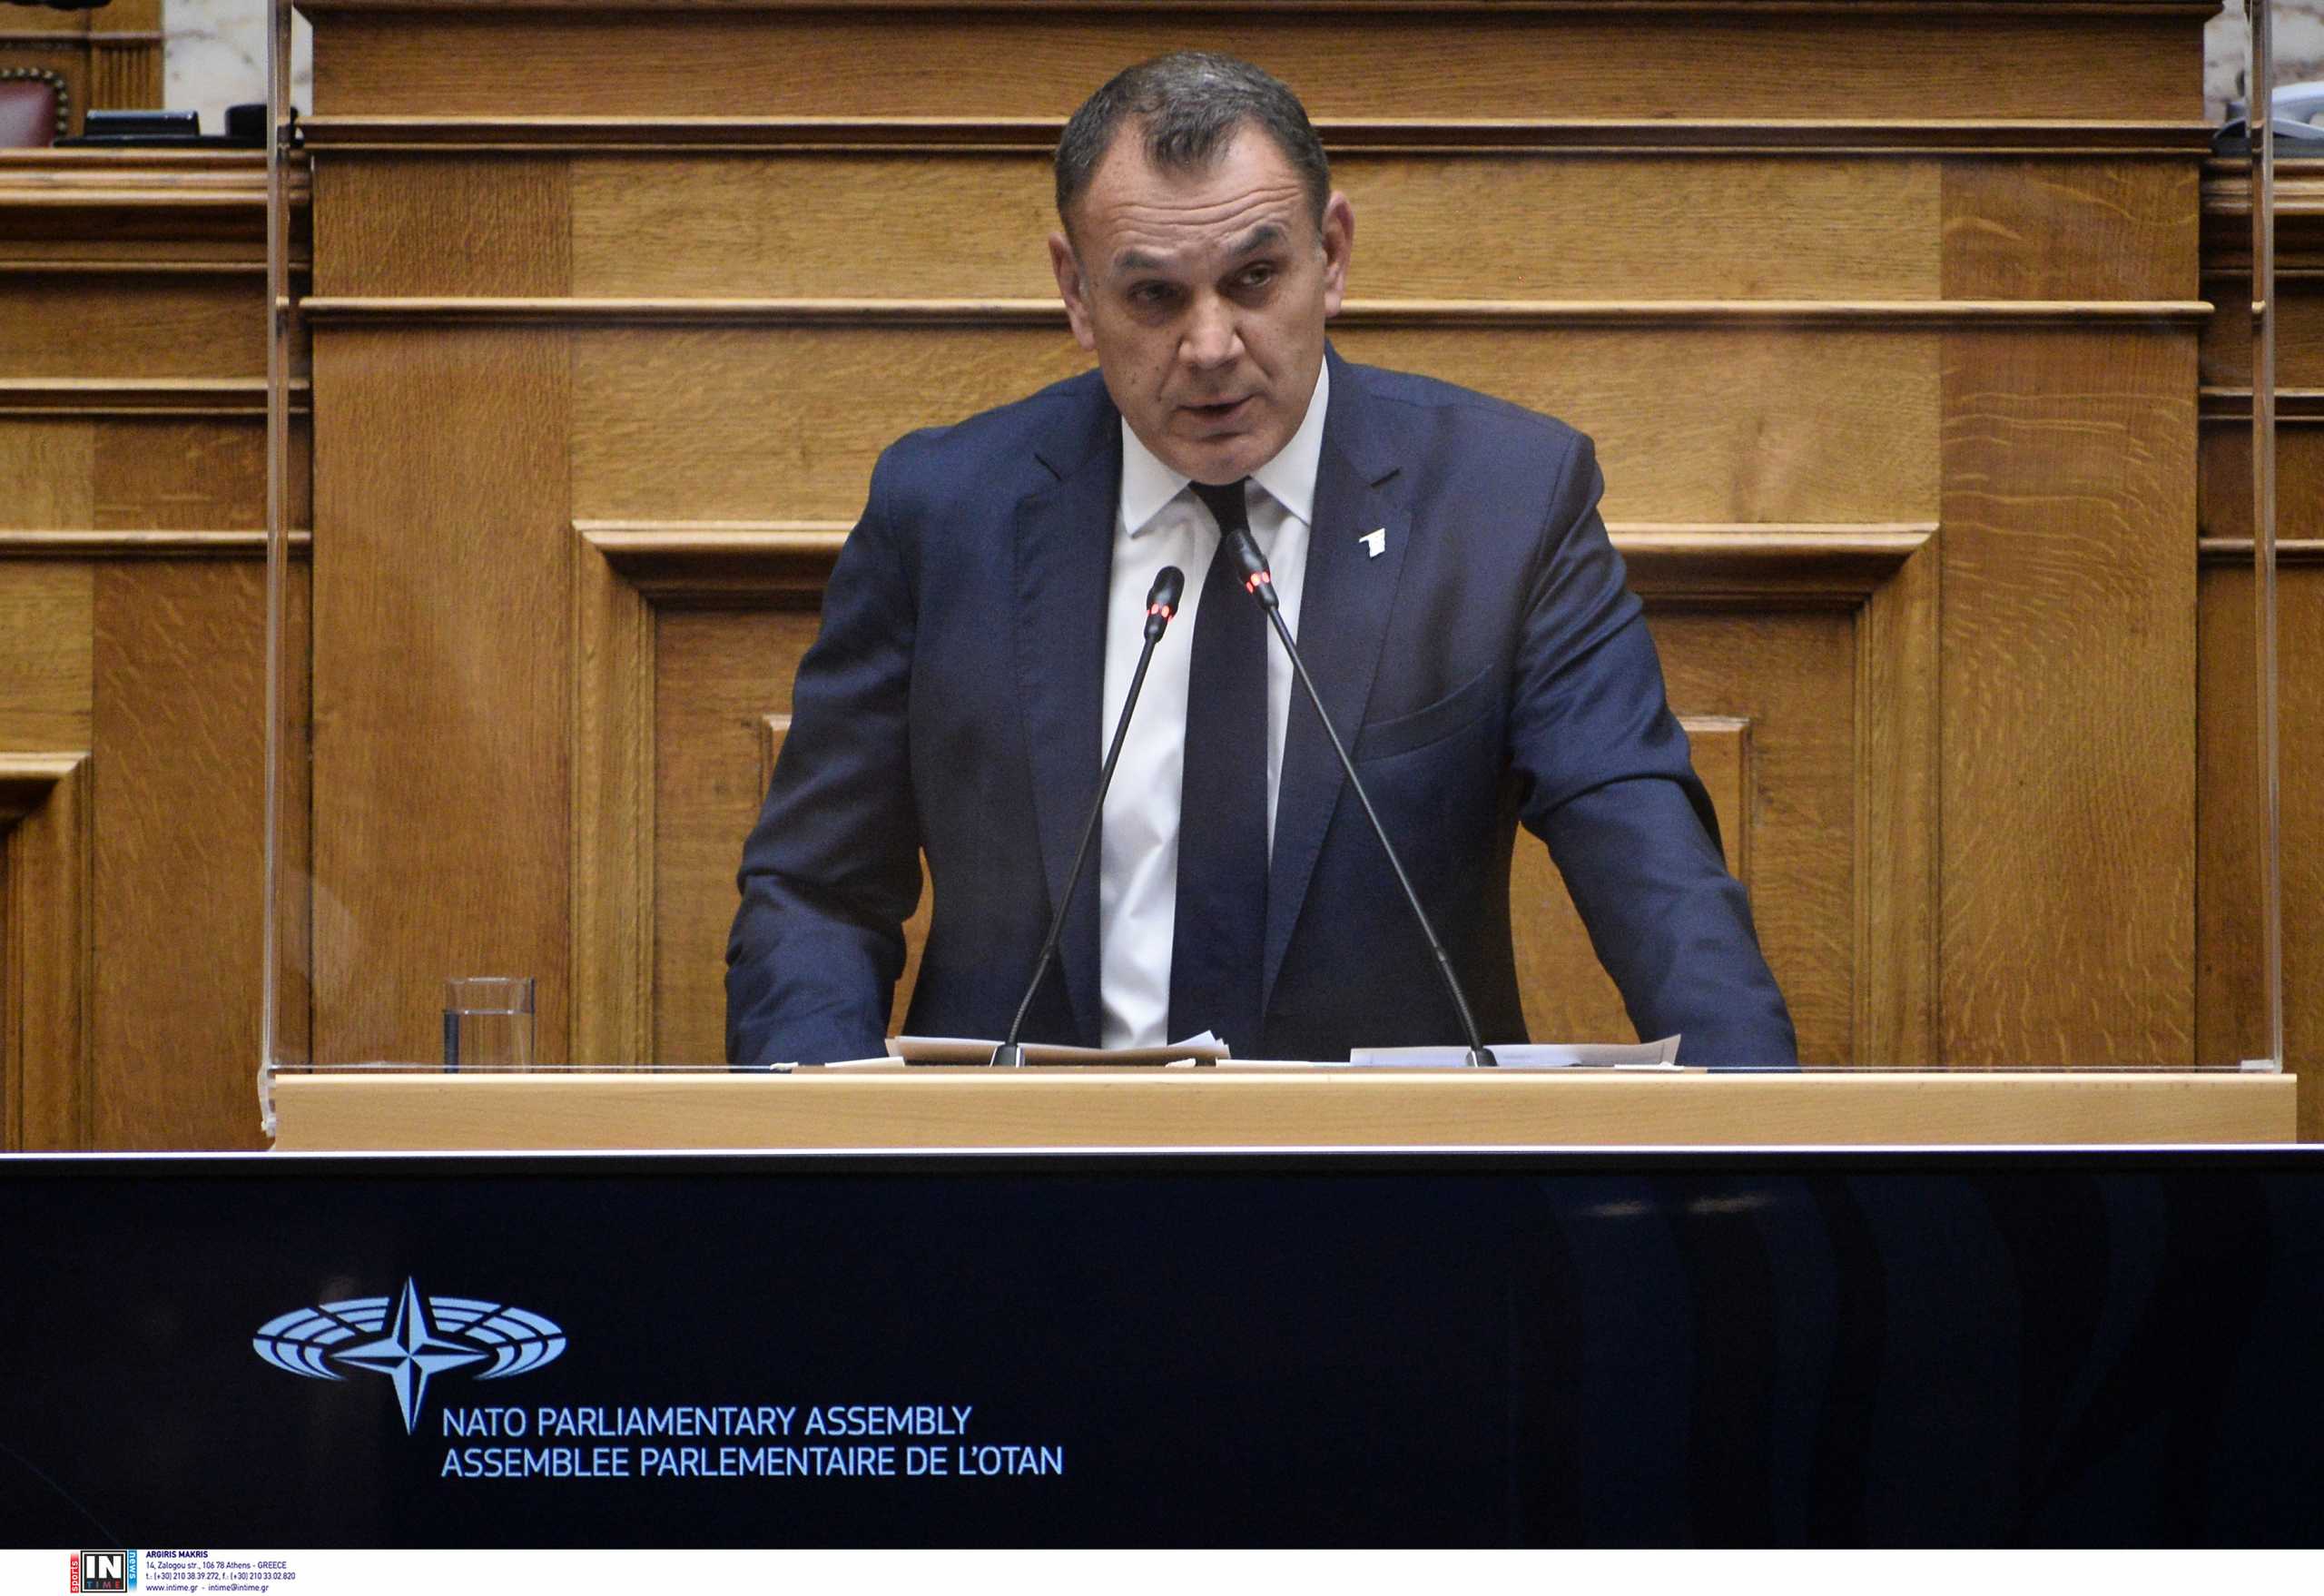 Νίκος Παναγιωτόπουλος: Προσήλωση στις αρχές του ΝΑΤΟ για την αντιμετώπιση των προκλήσεων ασφαλείας